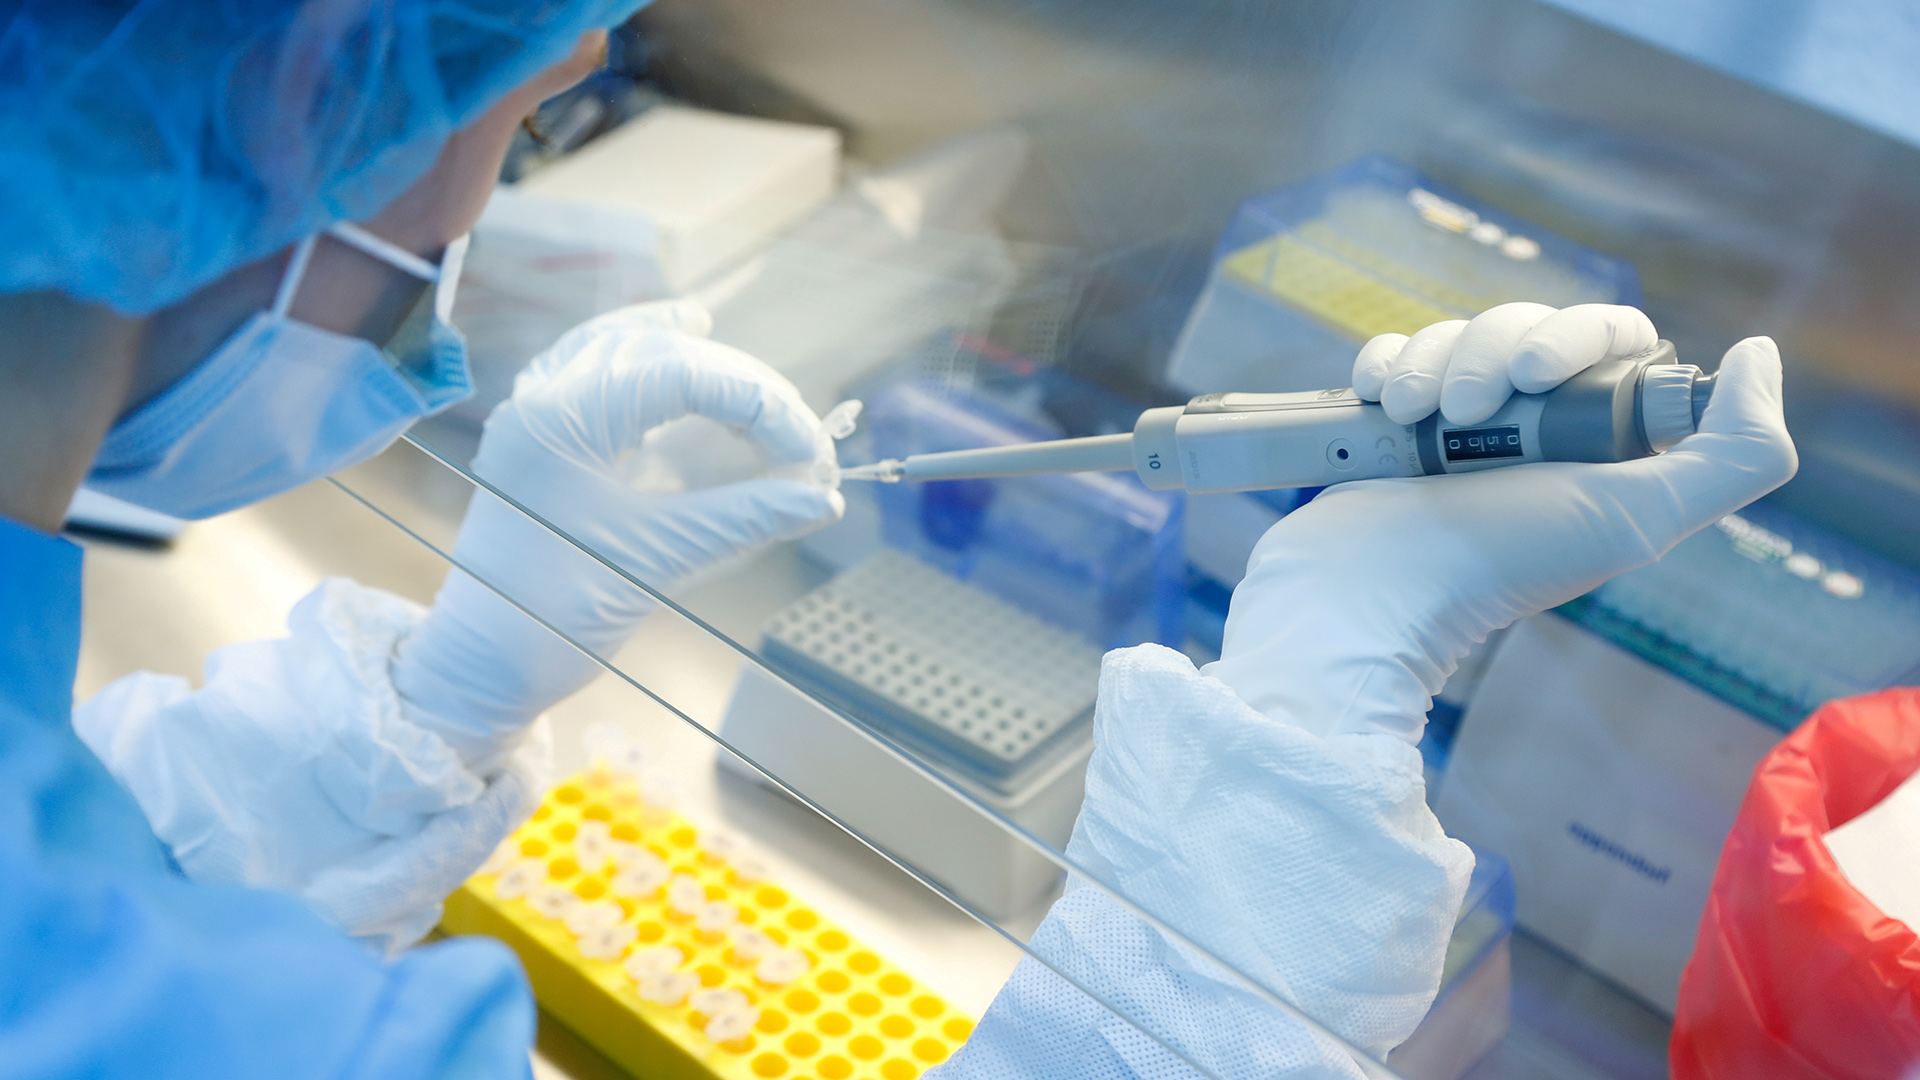 Ein Wissenschaftler bereitet Proben eines Impfstoffs gegen Covid-19 in einem Labor in Sankt Petersburg, Russland, am 11. Juni 2020 vor